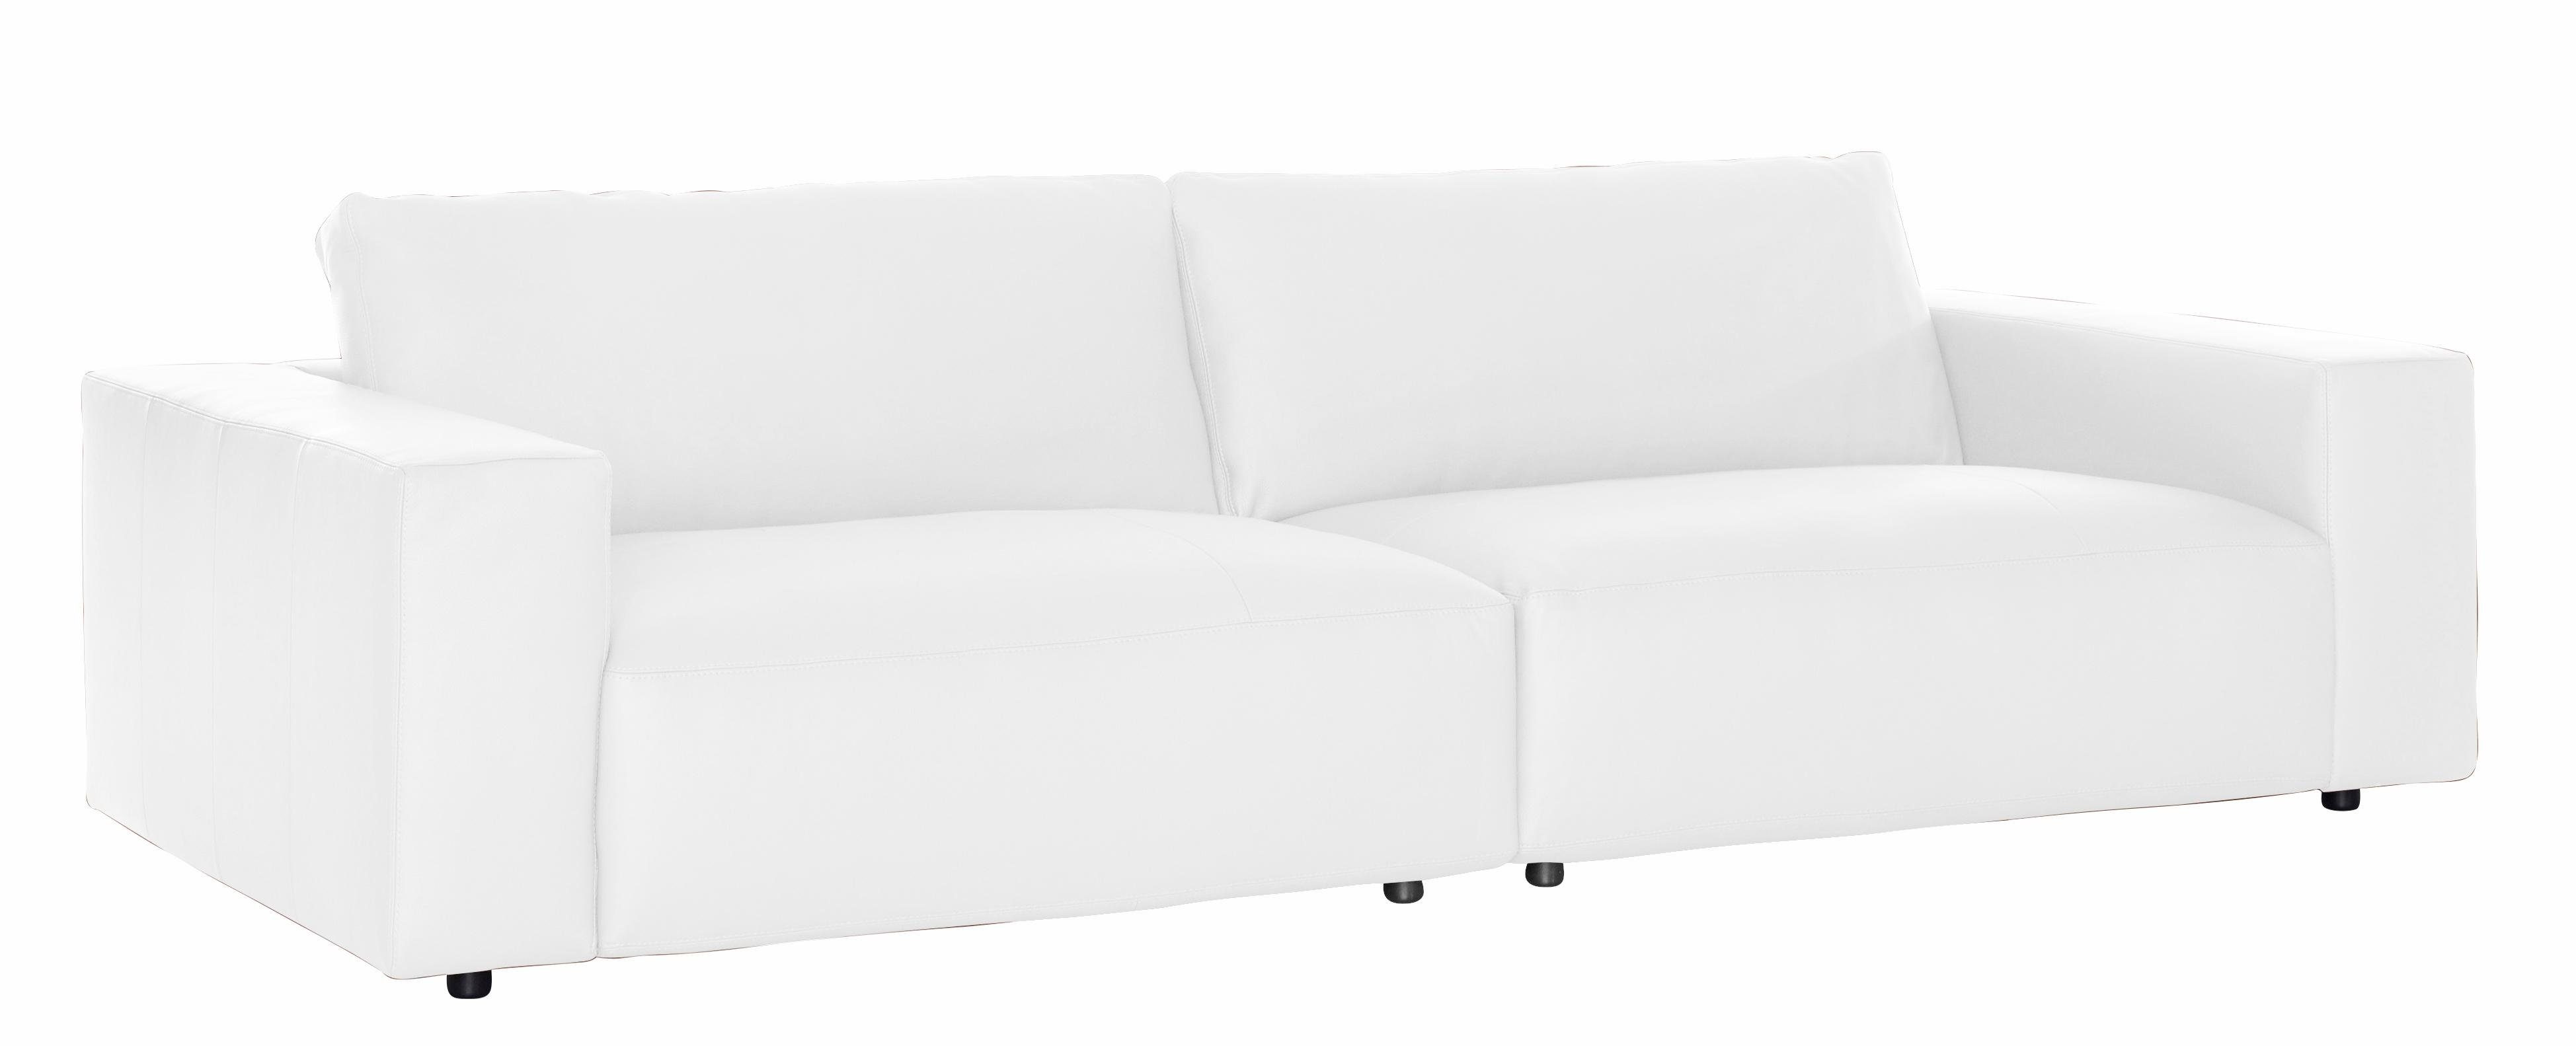 Big-Sofa 3-Sitzer und GALLERY by unterschiedlichen Nähten, Musterring in branded M 4 LUCIA, Qualitäten vielen